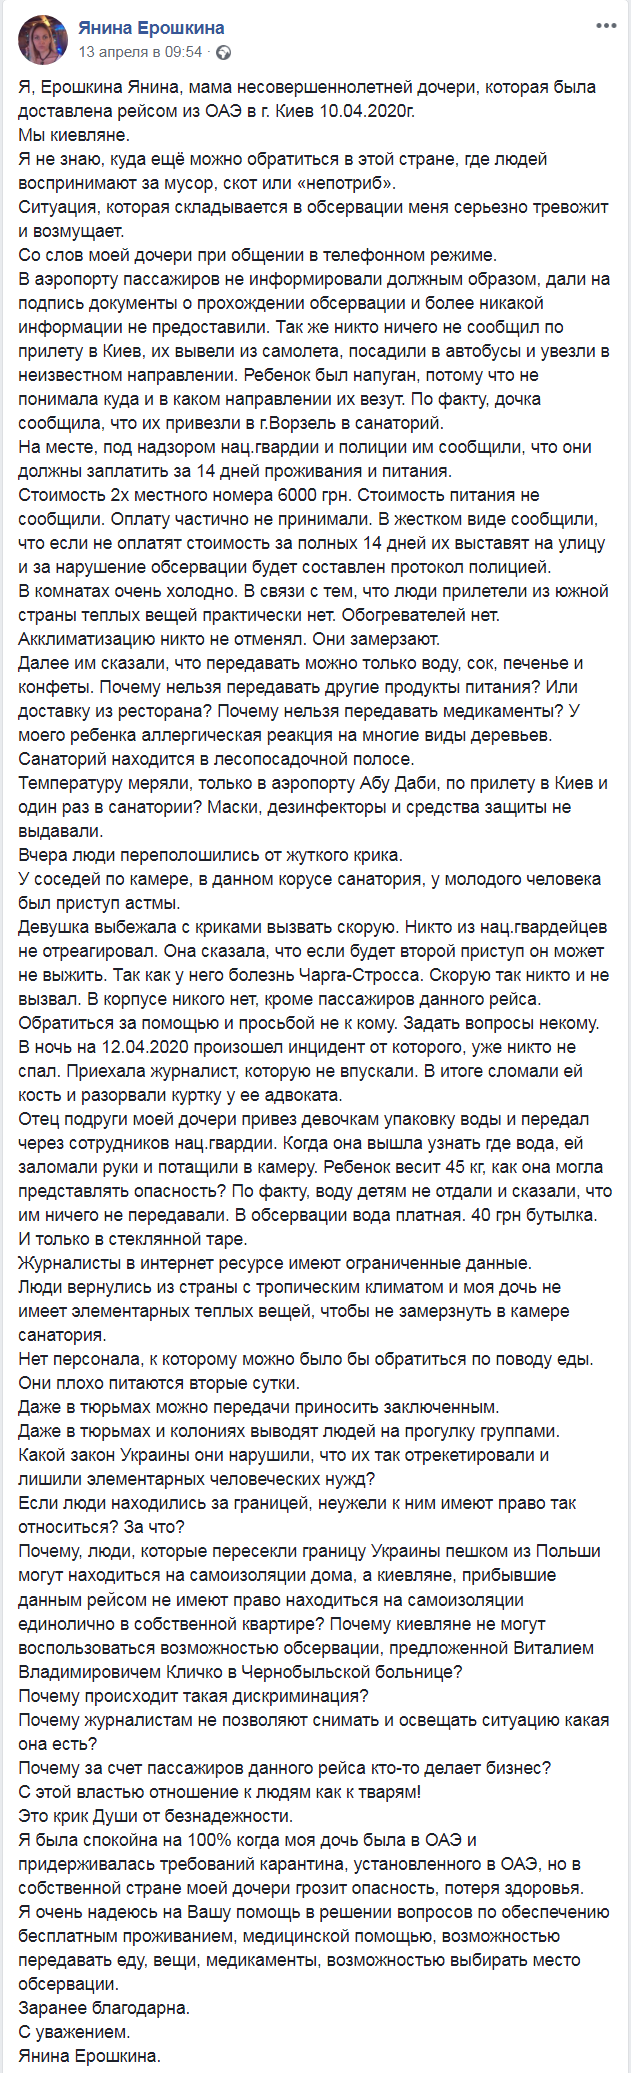 Скриншот из Facebook Янины Ерошкиной